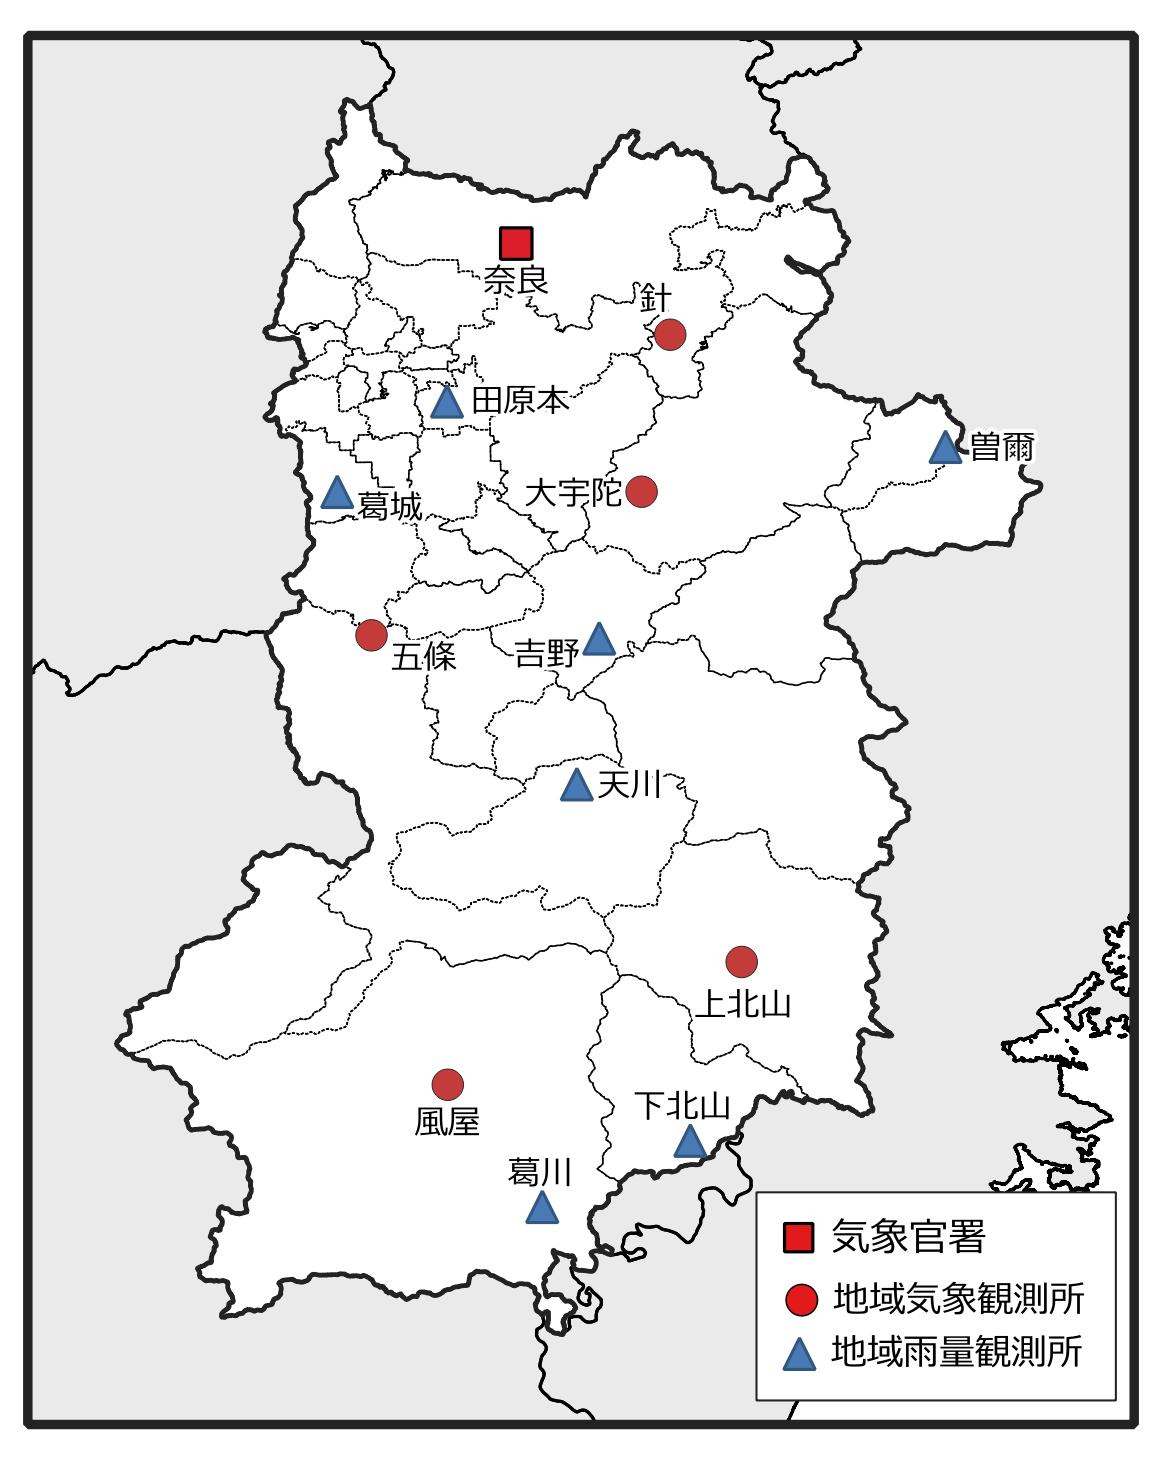 奈良県の地域気象観測所配置図